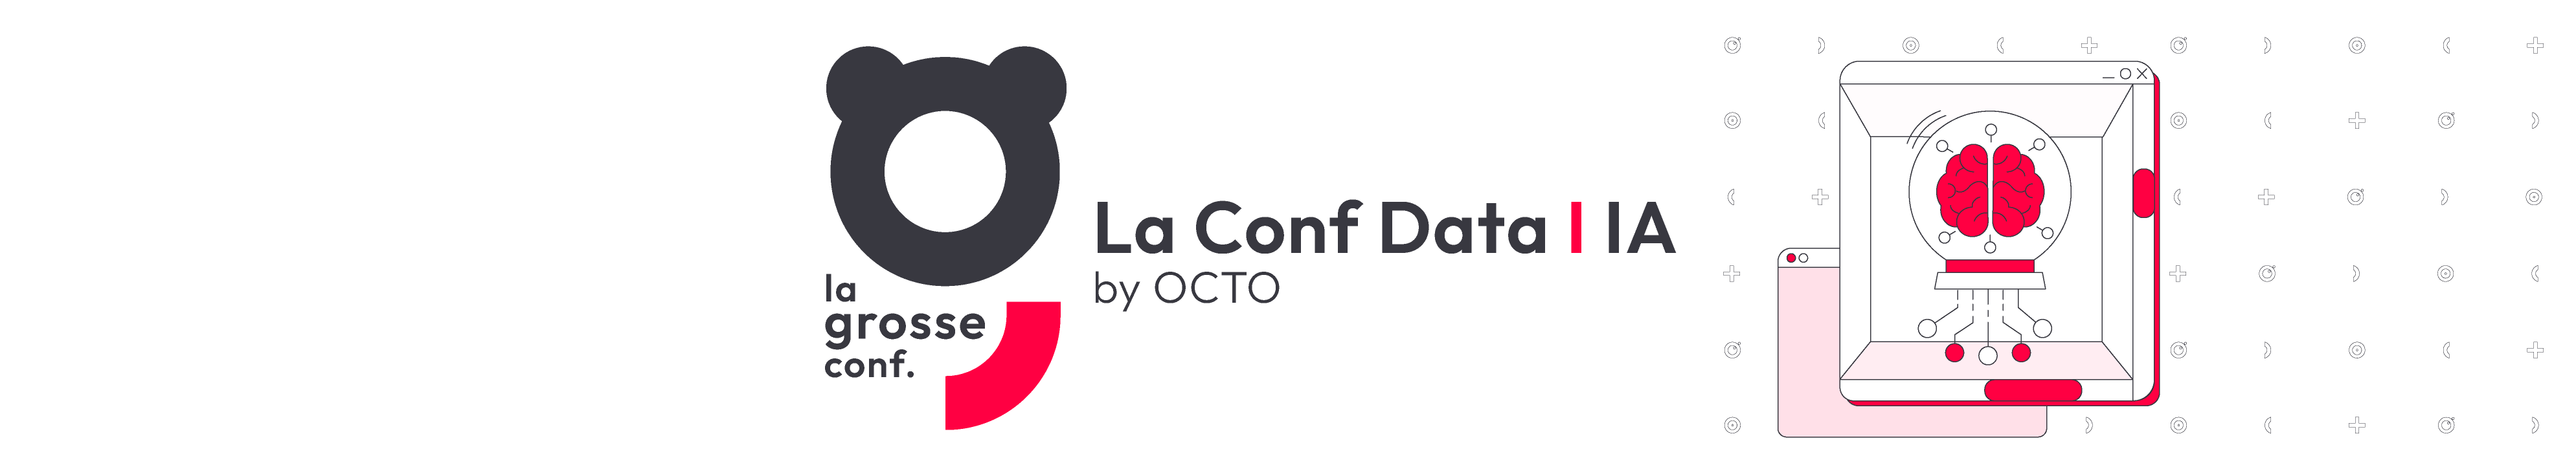 La conf DATA IA by OCTO